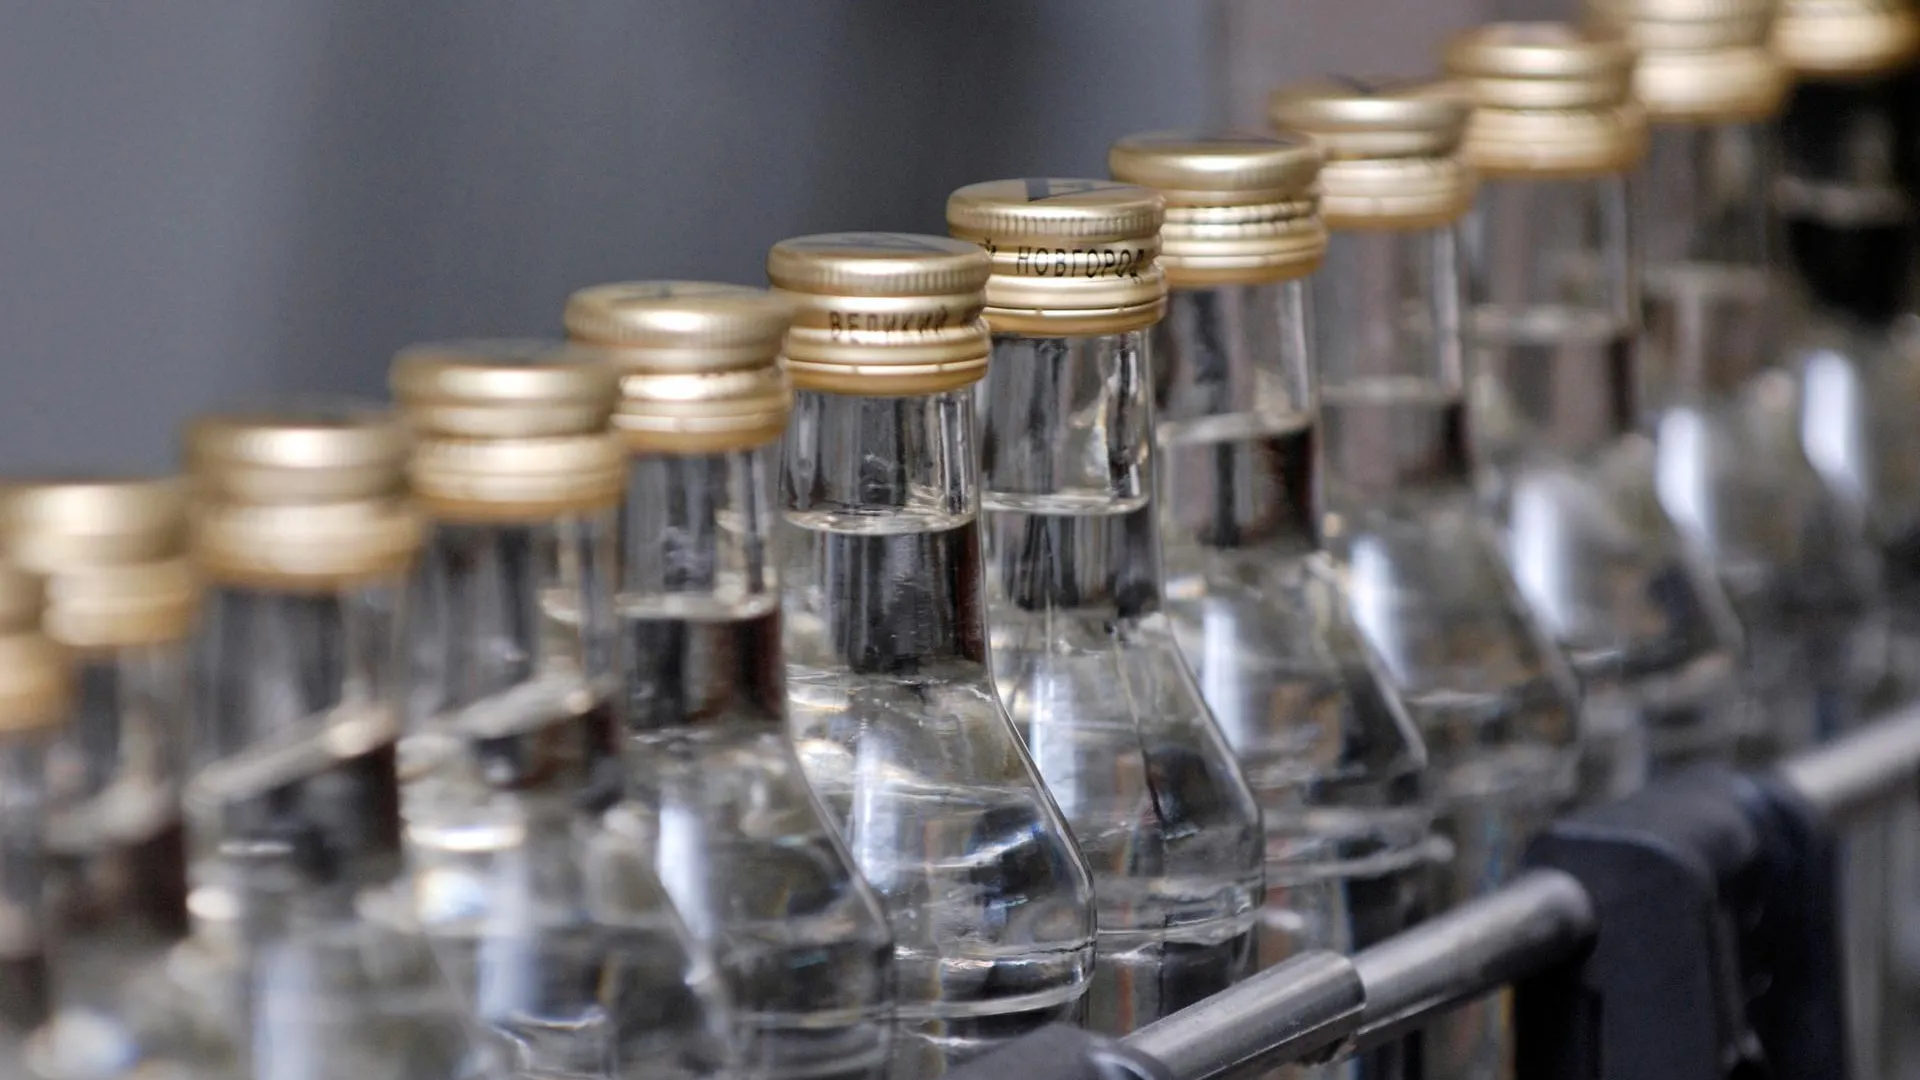 Около 500 тыс бутылок алкоголя изъято в цехе в Железнодорожном